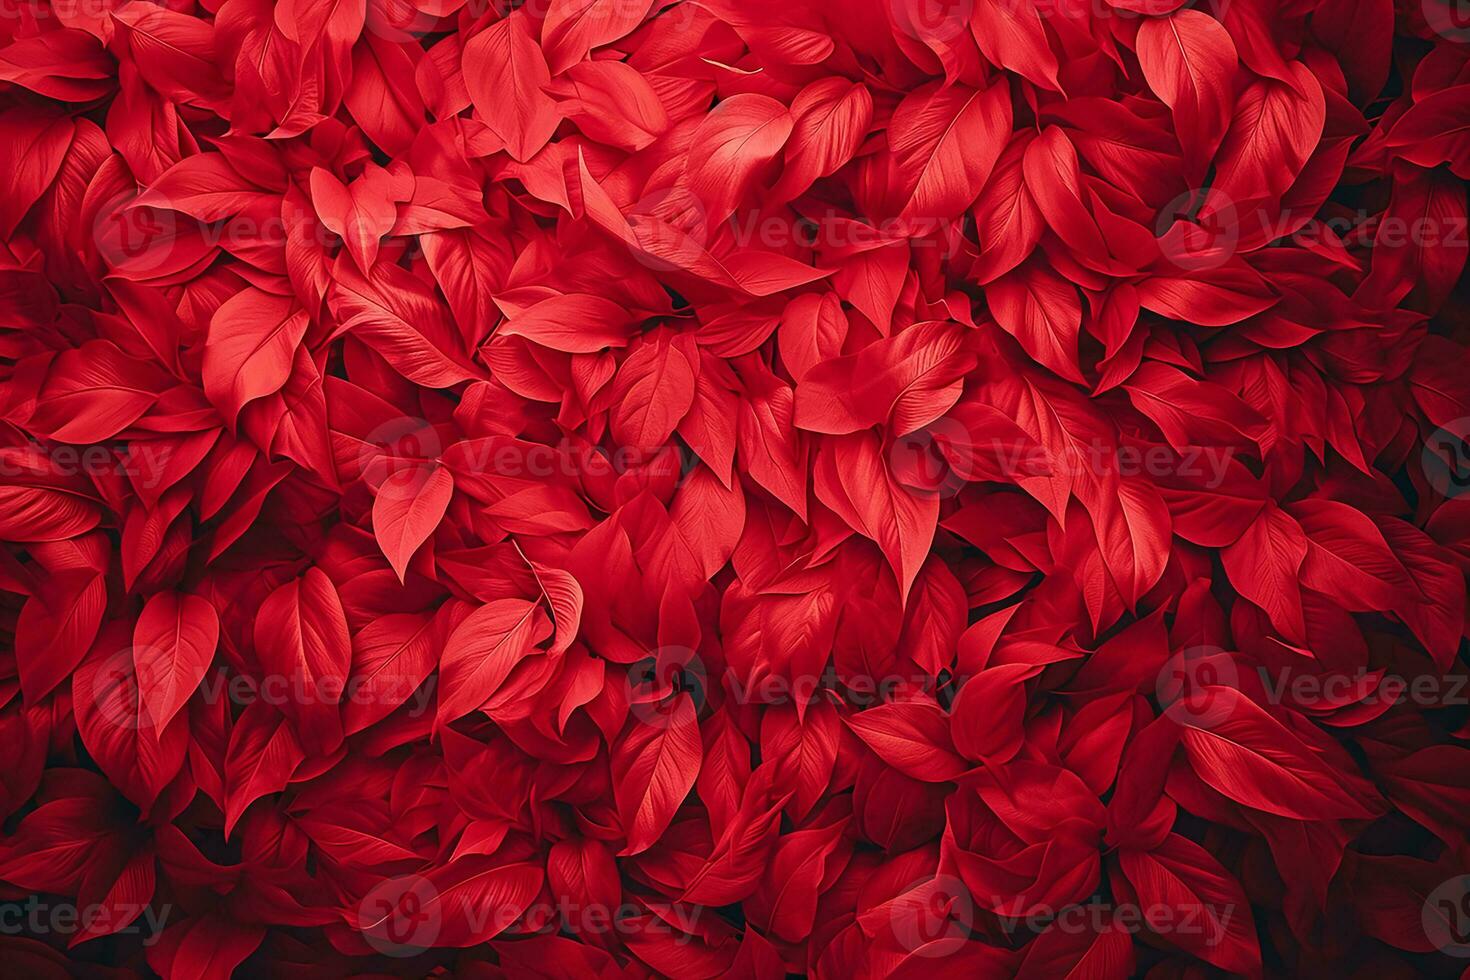 ai genererad röd Färg bakgrund omgiven förbi romantisk atmosfär av flytande röd hjärta formad Skära ut papper foto